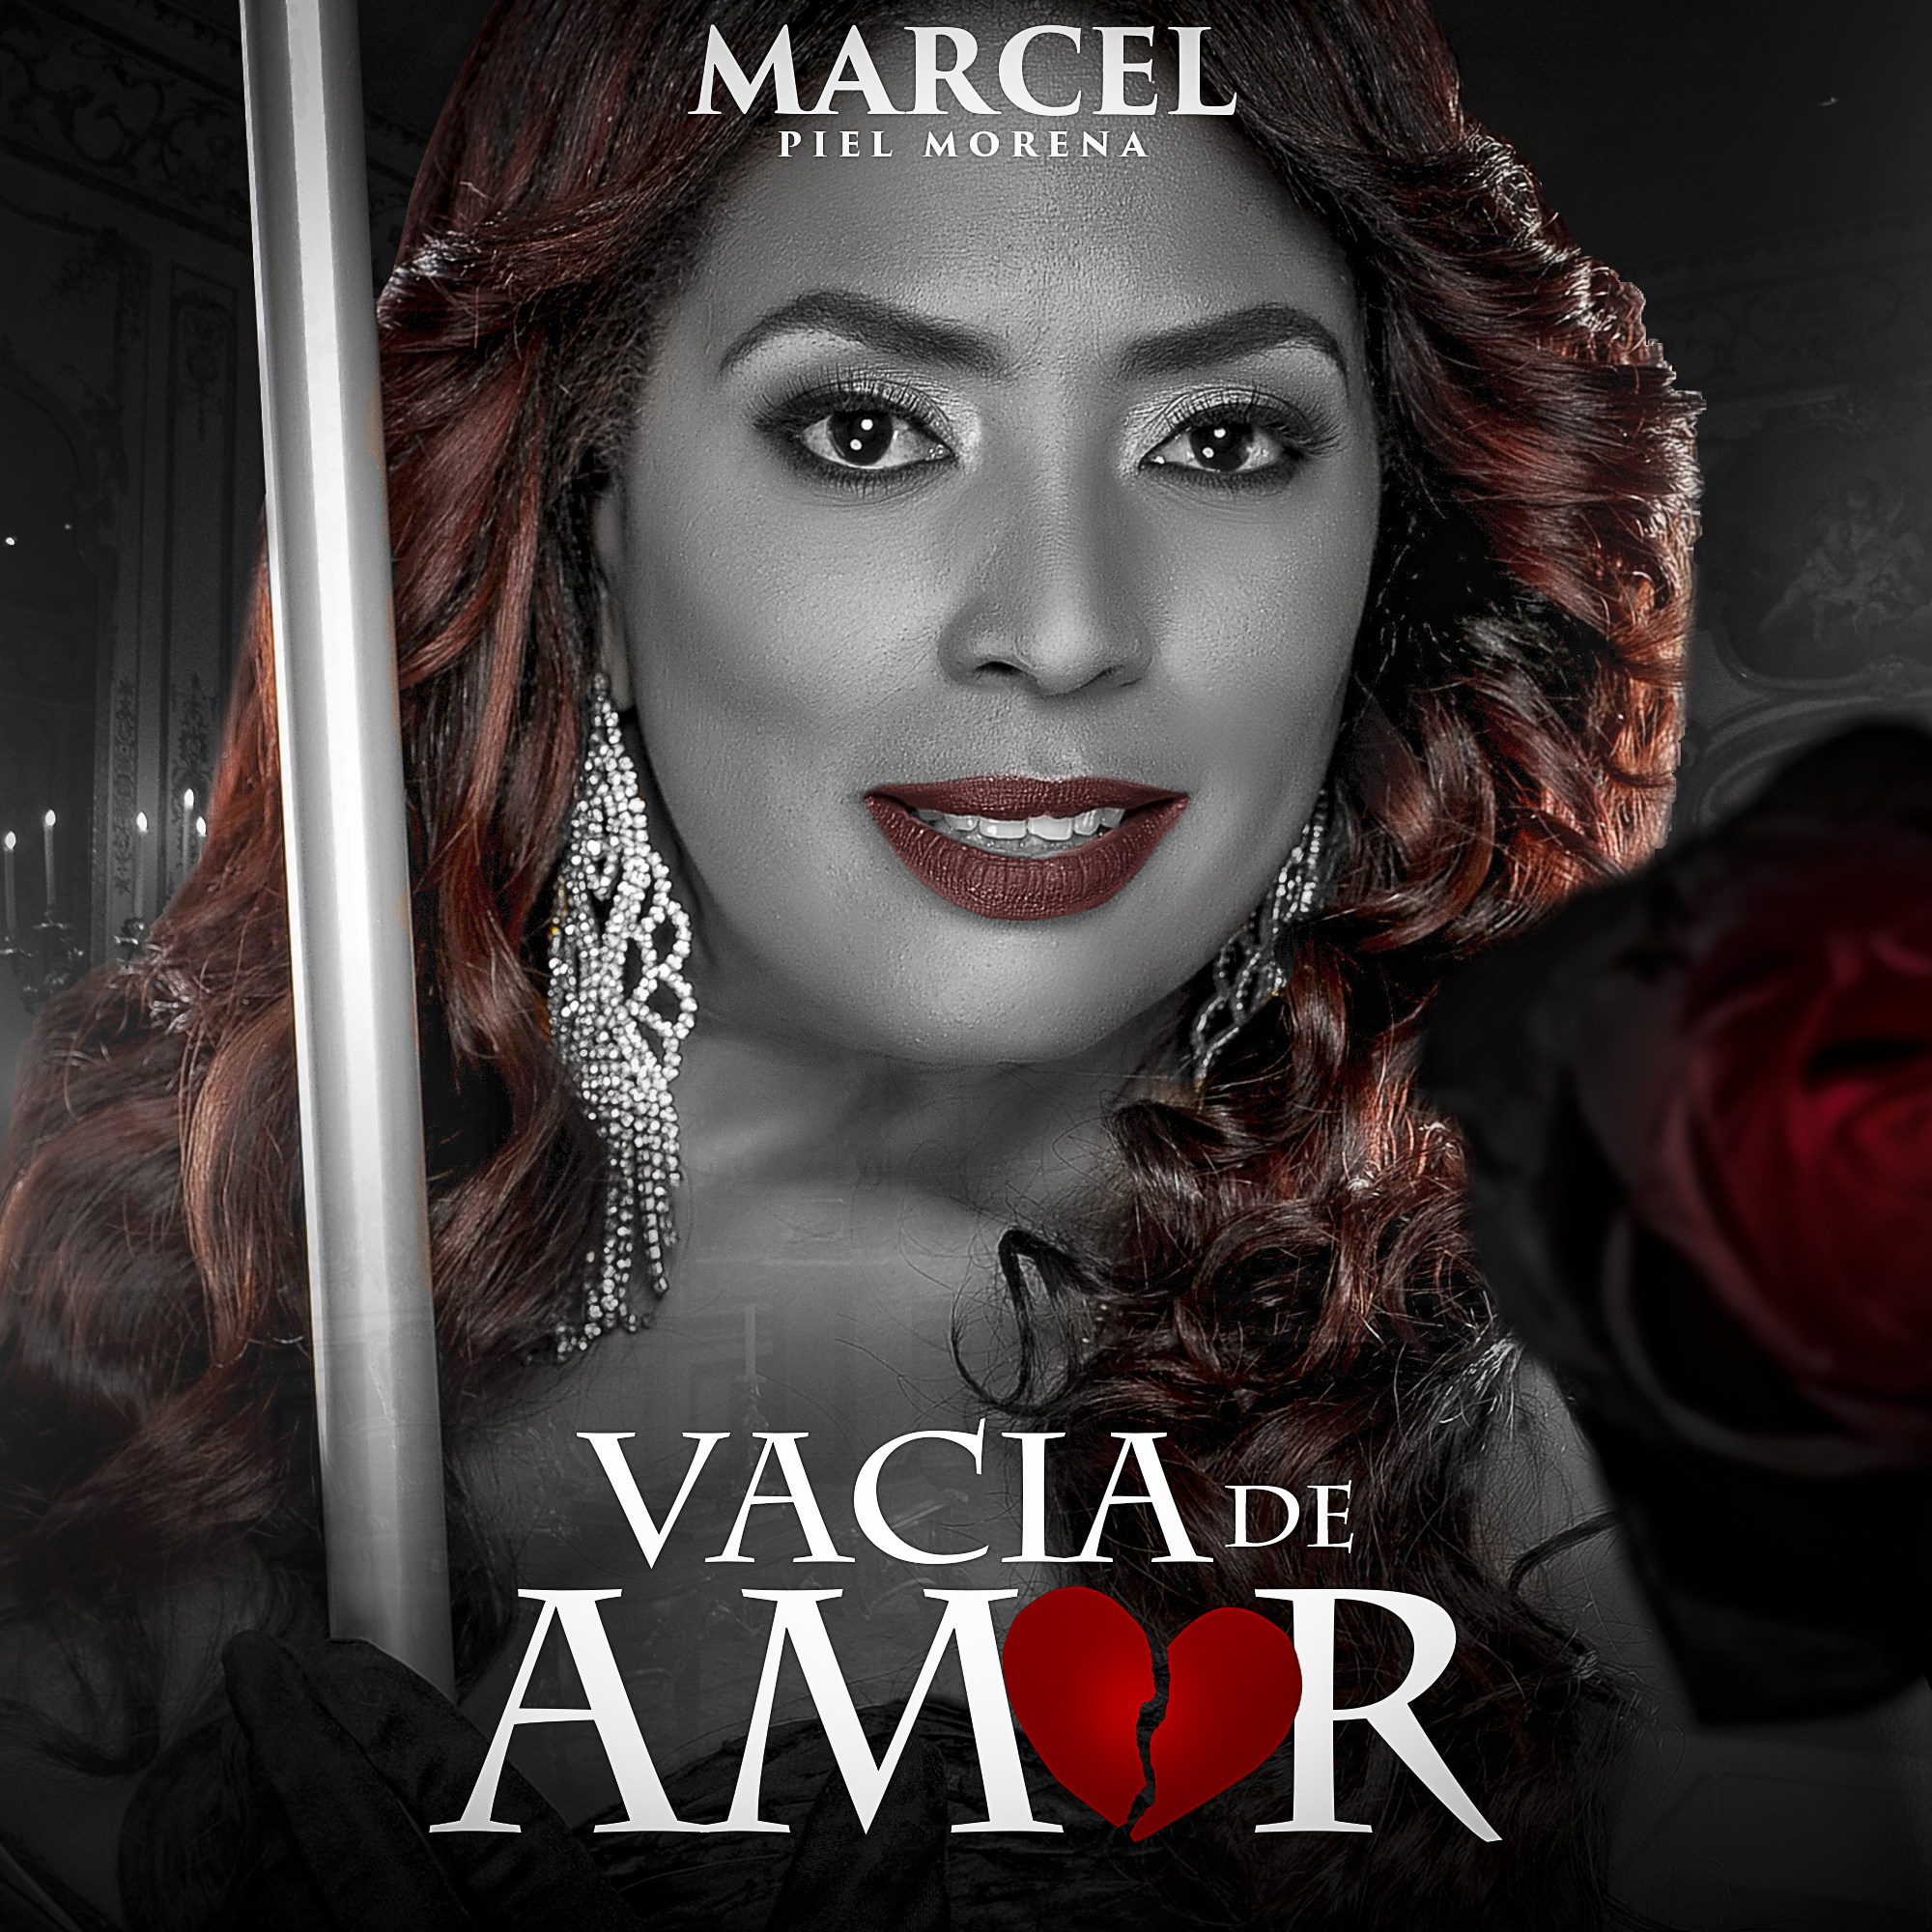  La cantante Marcel estrenará su nuevo disco”Vacía de Amor” en México